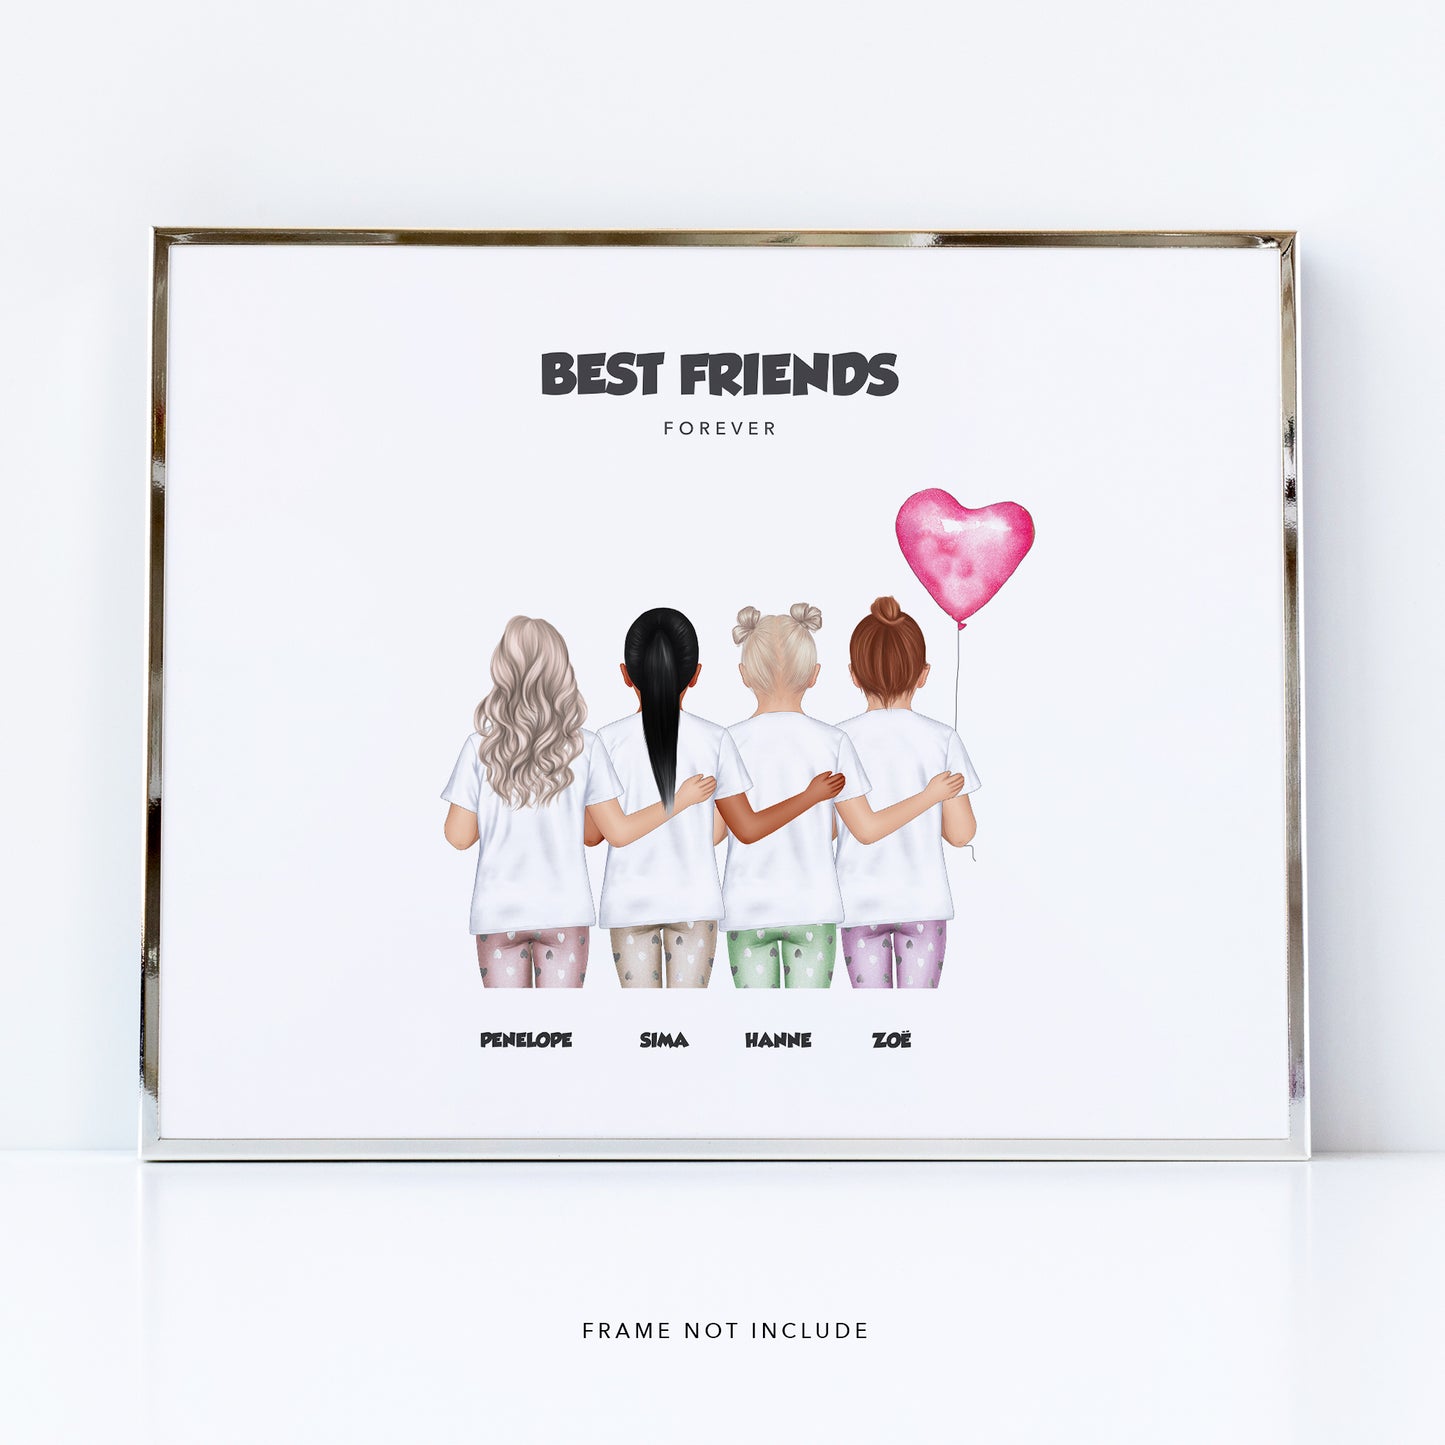 Forever friends print | Group gift for children